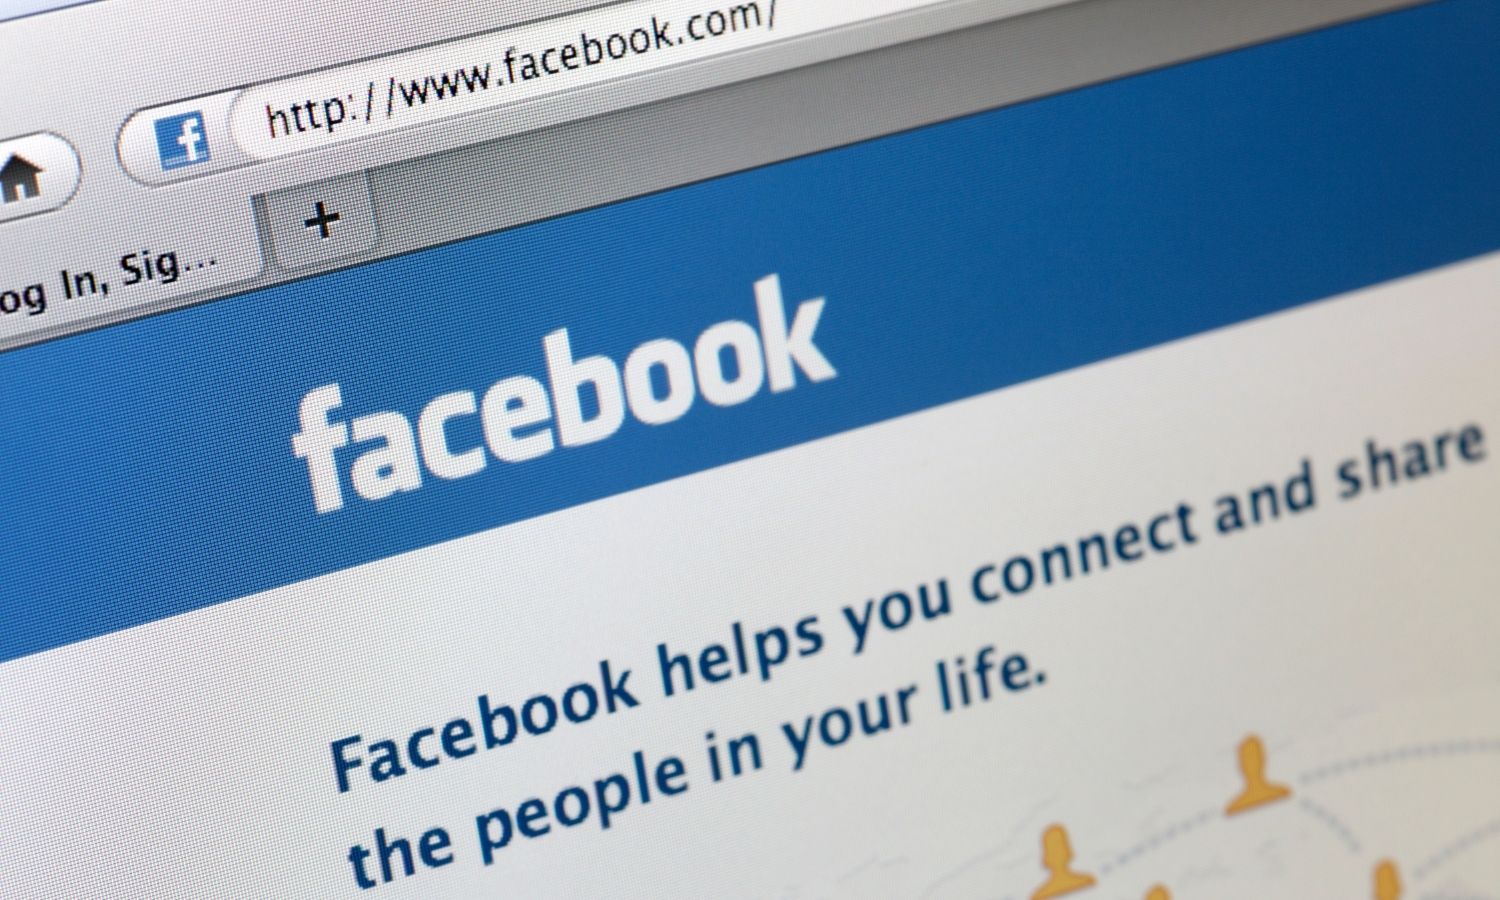 OTD in 2004: Mark Zuckerberg founded the social networking website Facebook.